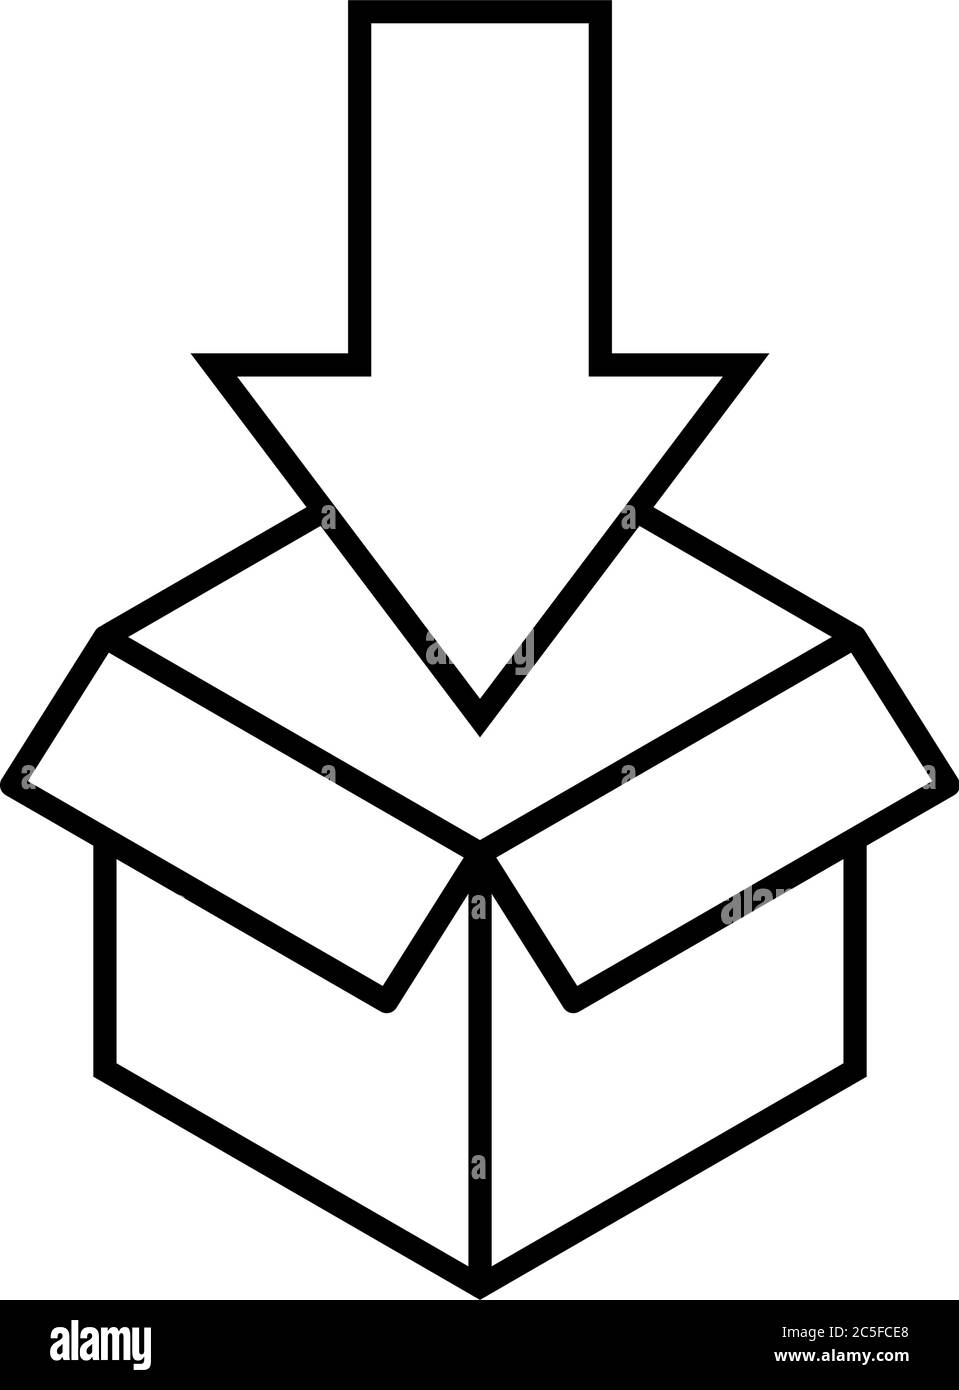 Paket mit Pfeil Logo Lieferung oder Download-Symbol schwarz öffnen Und weiße Vektorgrafik Stock Vektor